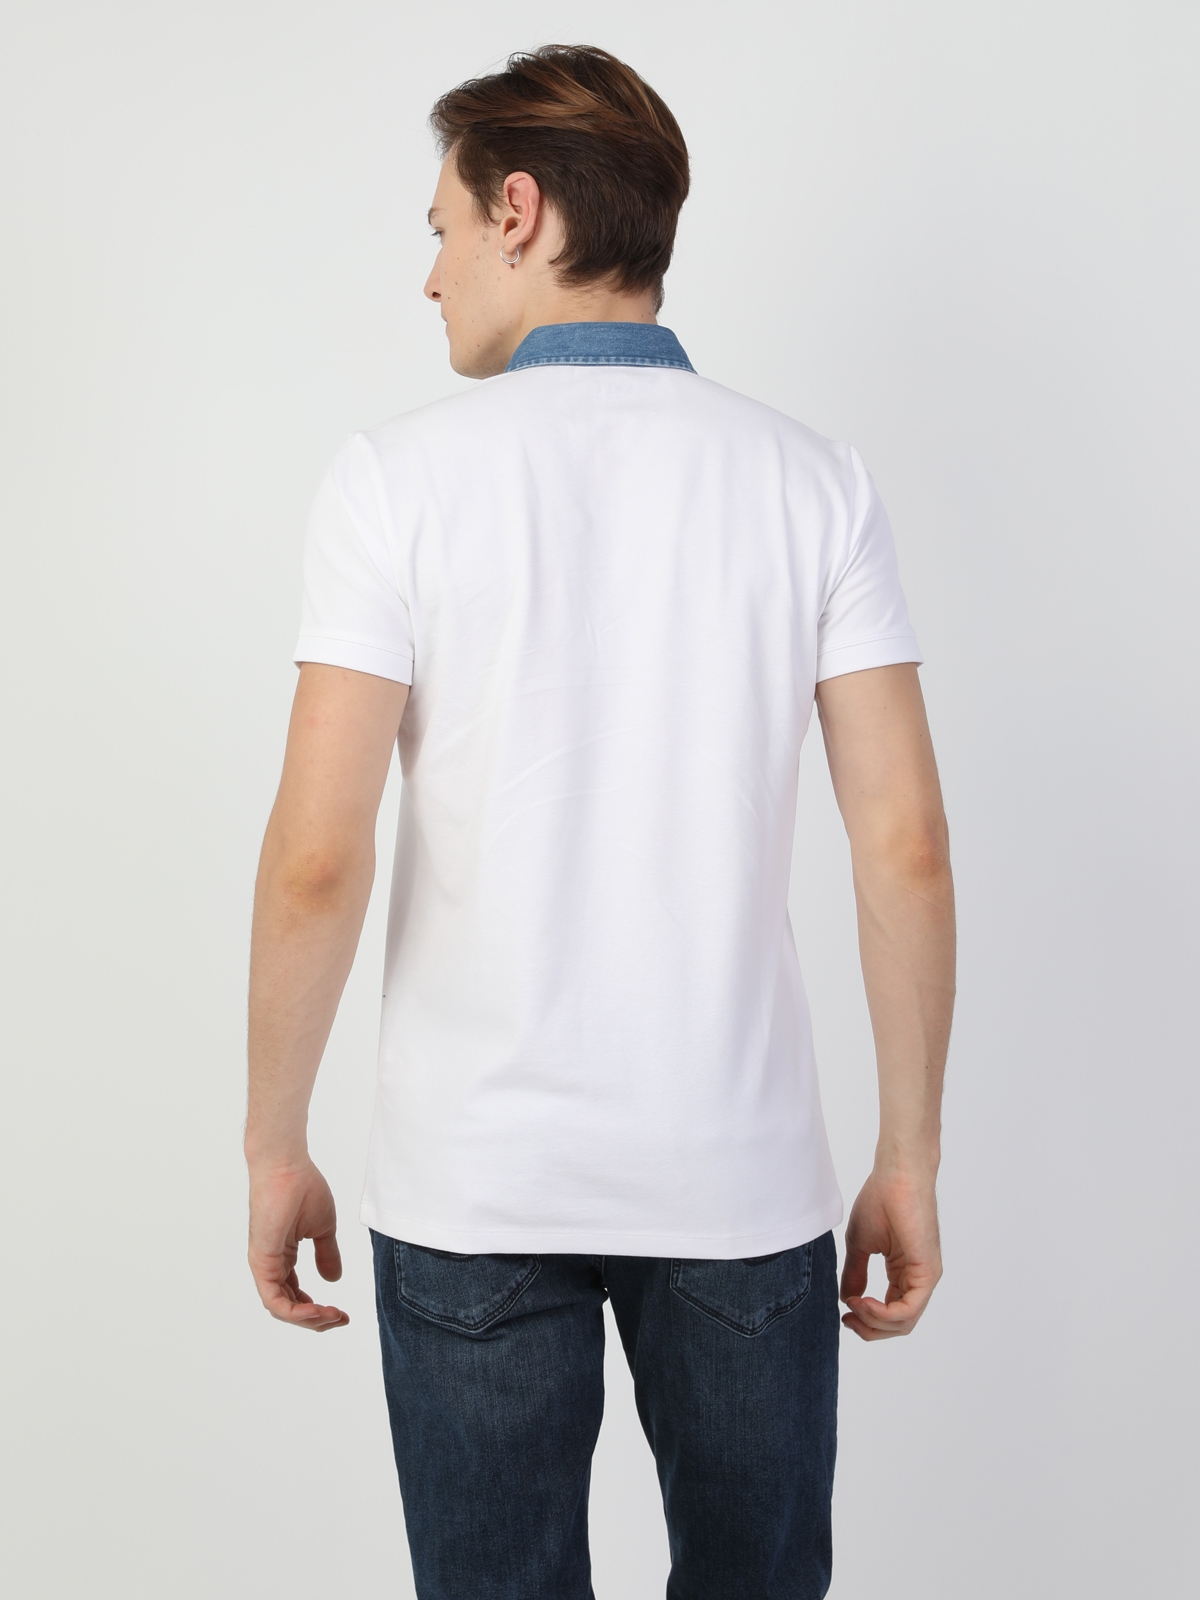 Afficher les détails de T-Shirt Polo Blanc À Manches Courtes Pour Hommes, Coupe Ajustée, Col Polo